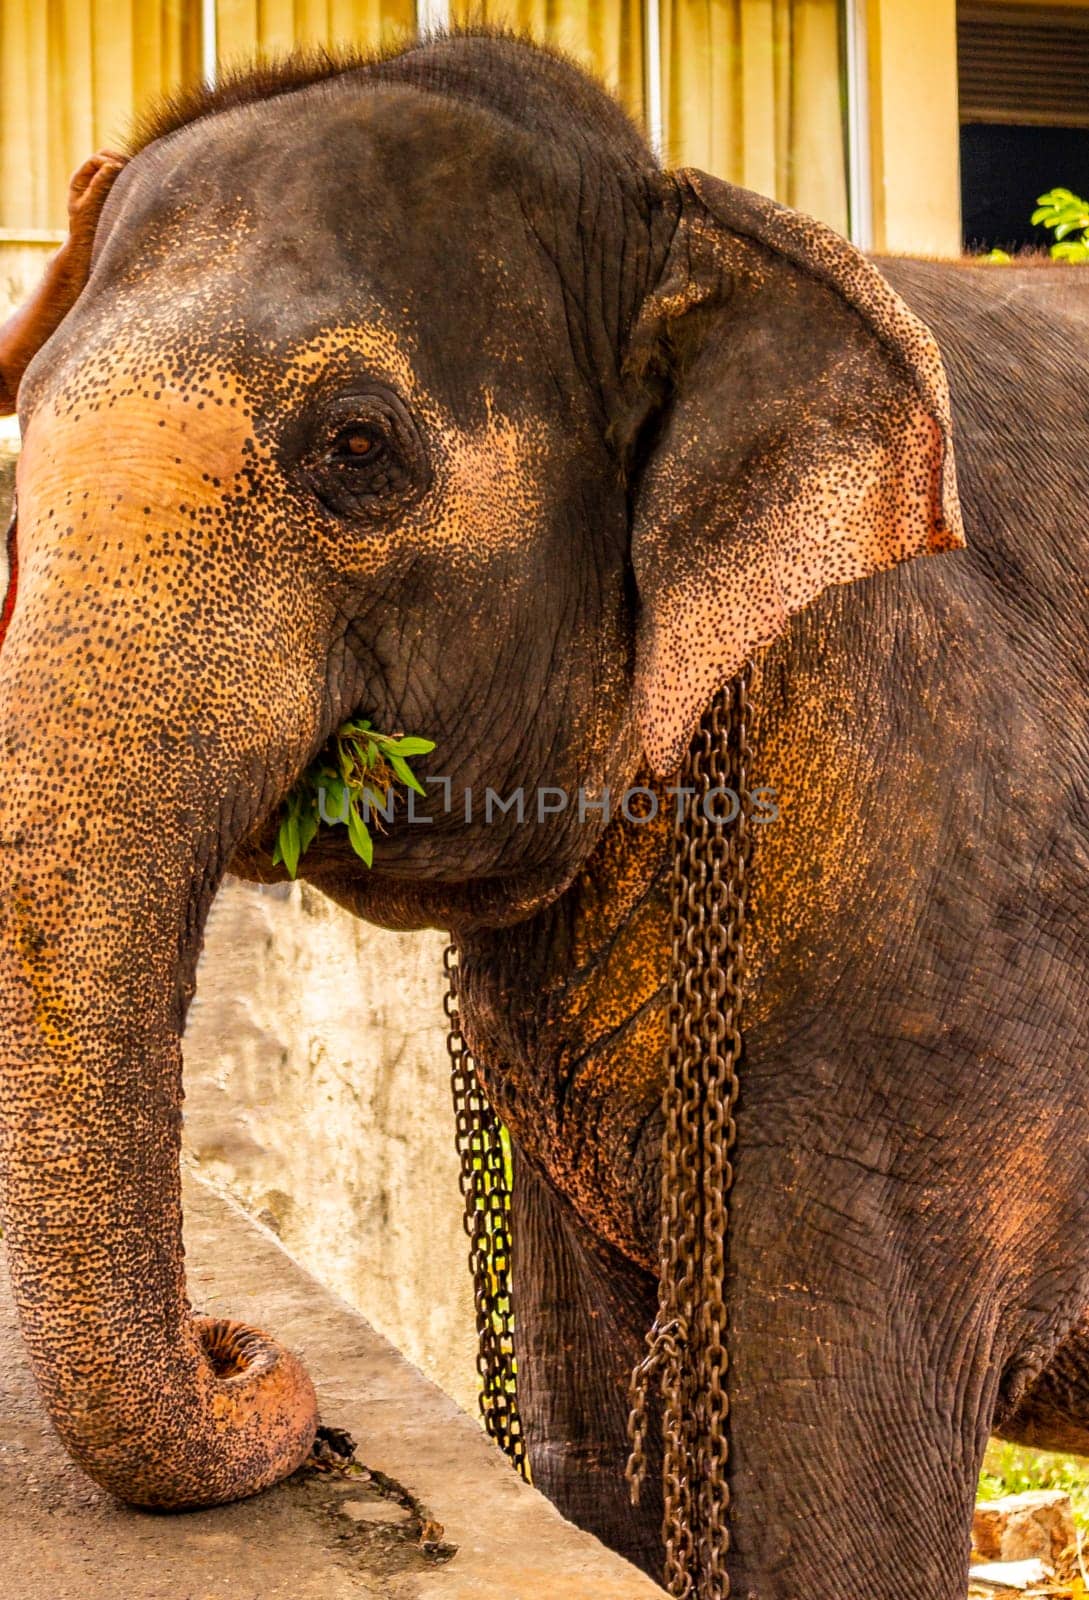 Sri Lanka temple elephant Elephant rides Bentota Beach Sri Lanka. by Arkadij